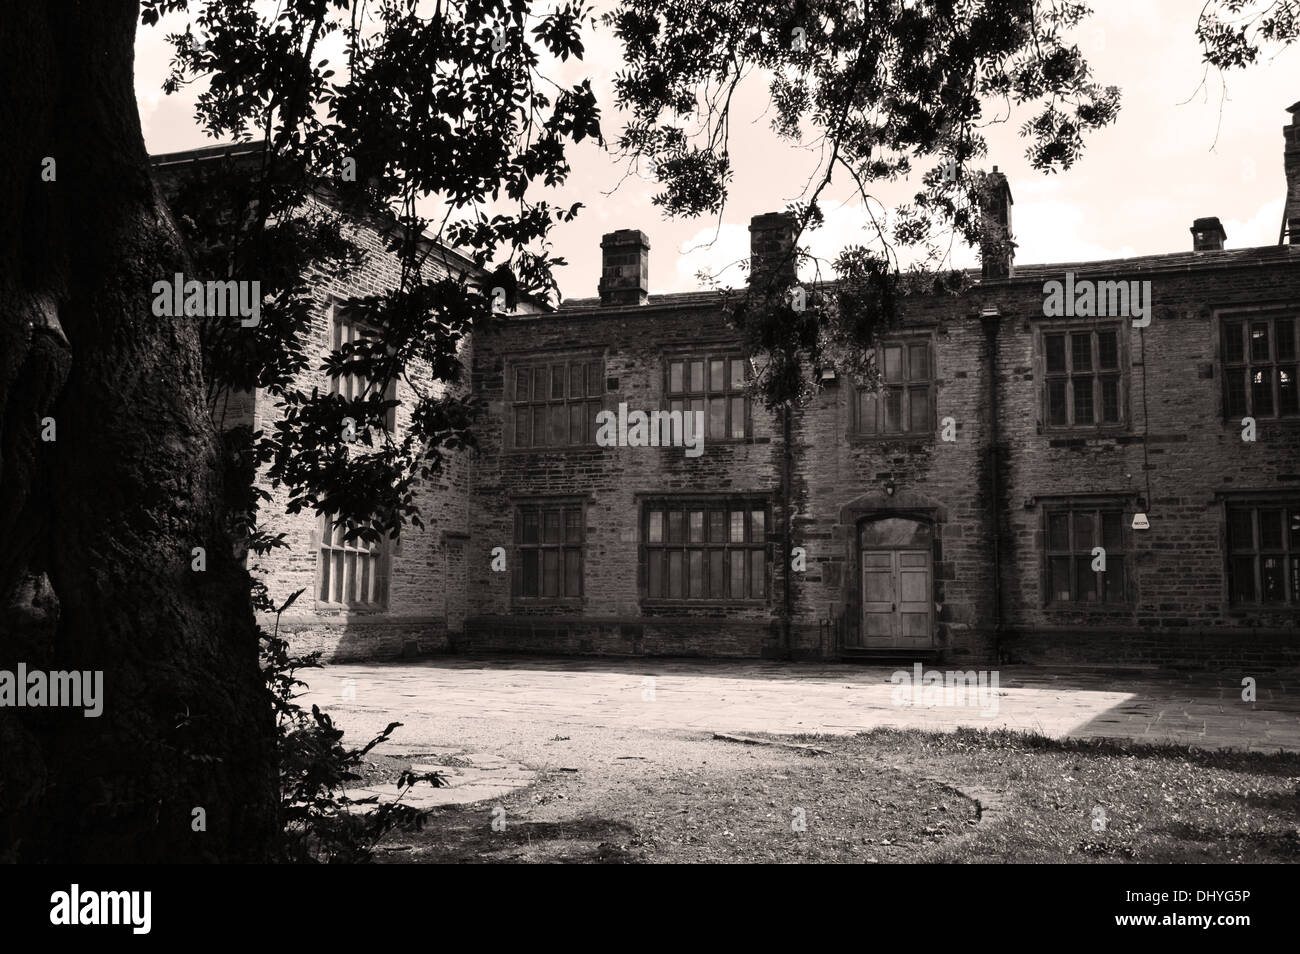 Bolling Hall à Bradford, West Yorkshire, UK vue de l'arrière de la maison réputée pour être hantée par Anne Boleyn Banque D'Images